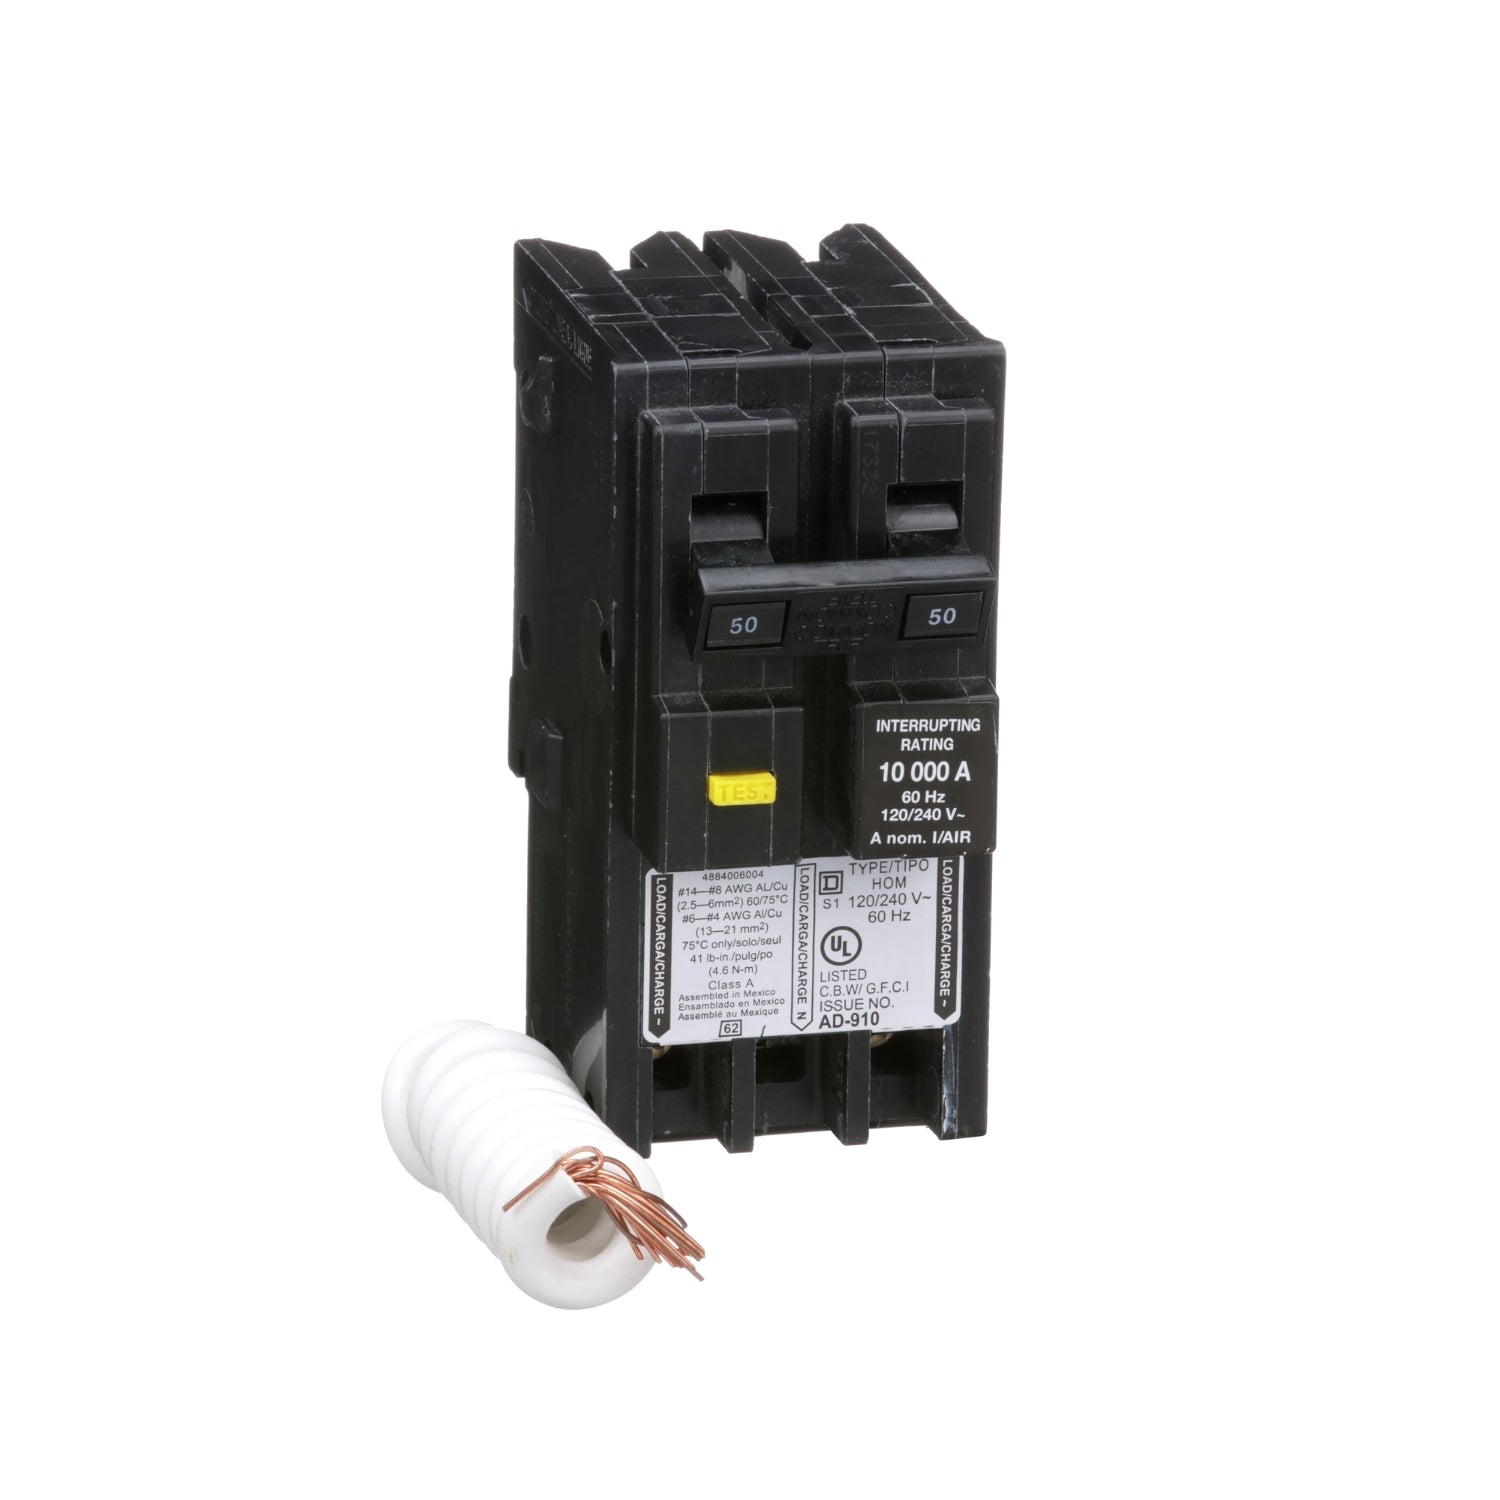 HOM250GFI | Schneider Electric Mini Circuit Breaker